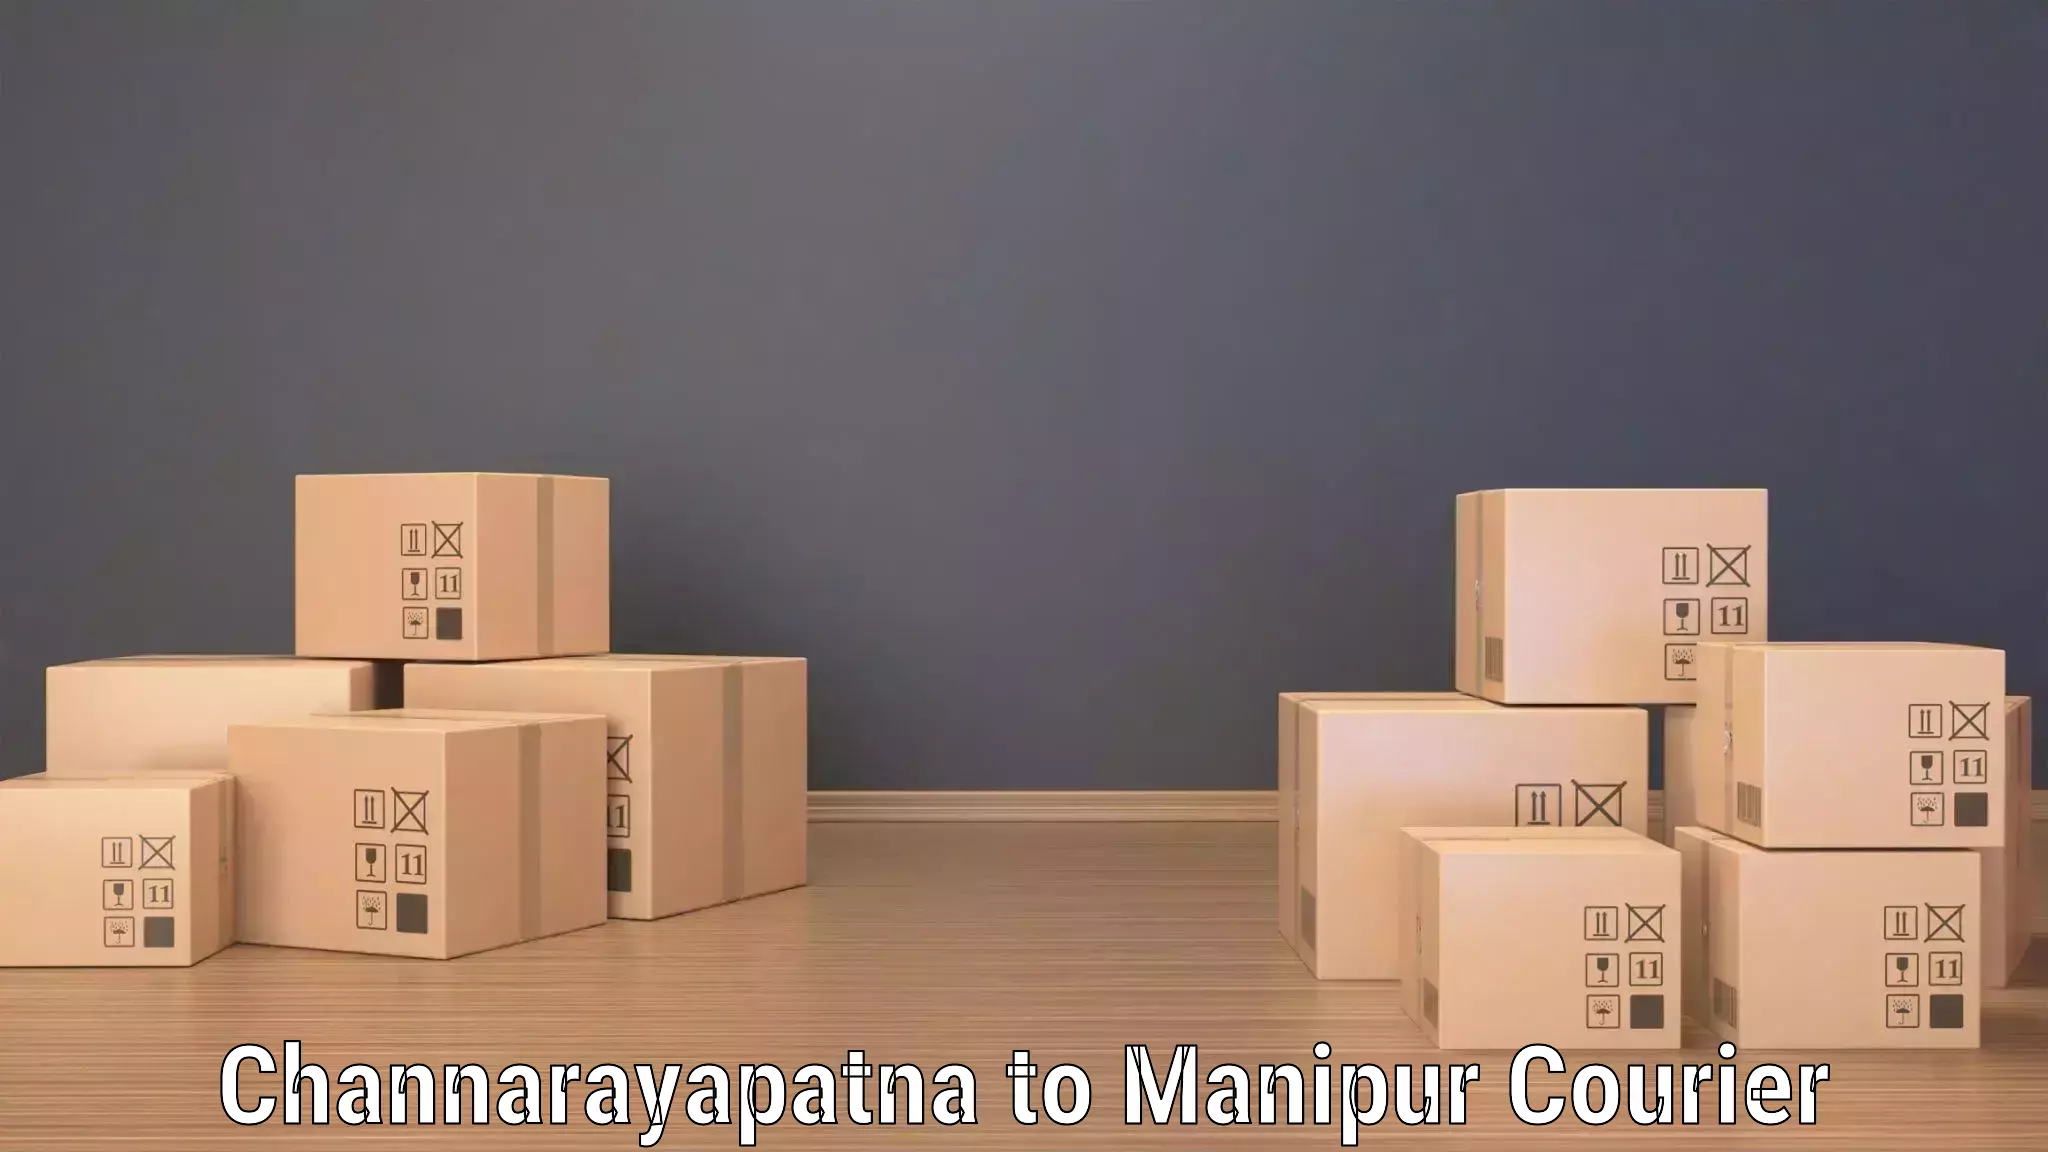 Efficient shipping operations Channarayapatna to Manipur